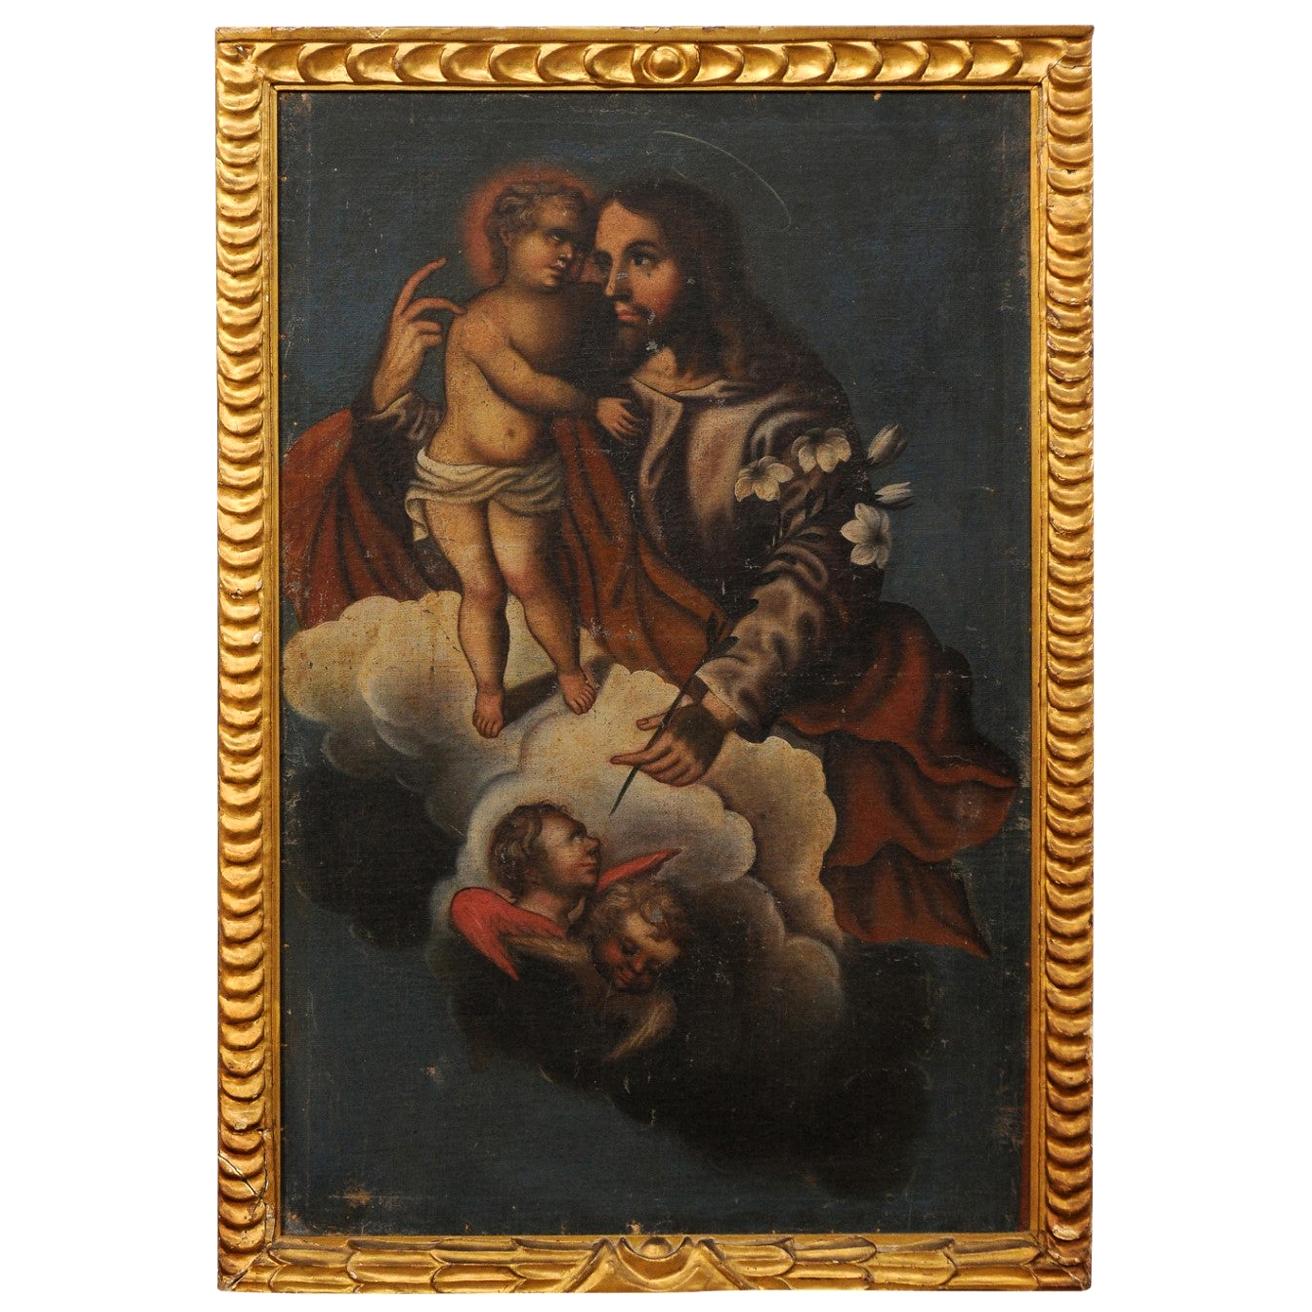 Peinture coloniale espagnole de Jésus avec un enfant, dans un cadre doré du 19ème siècle